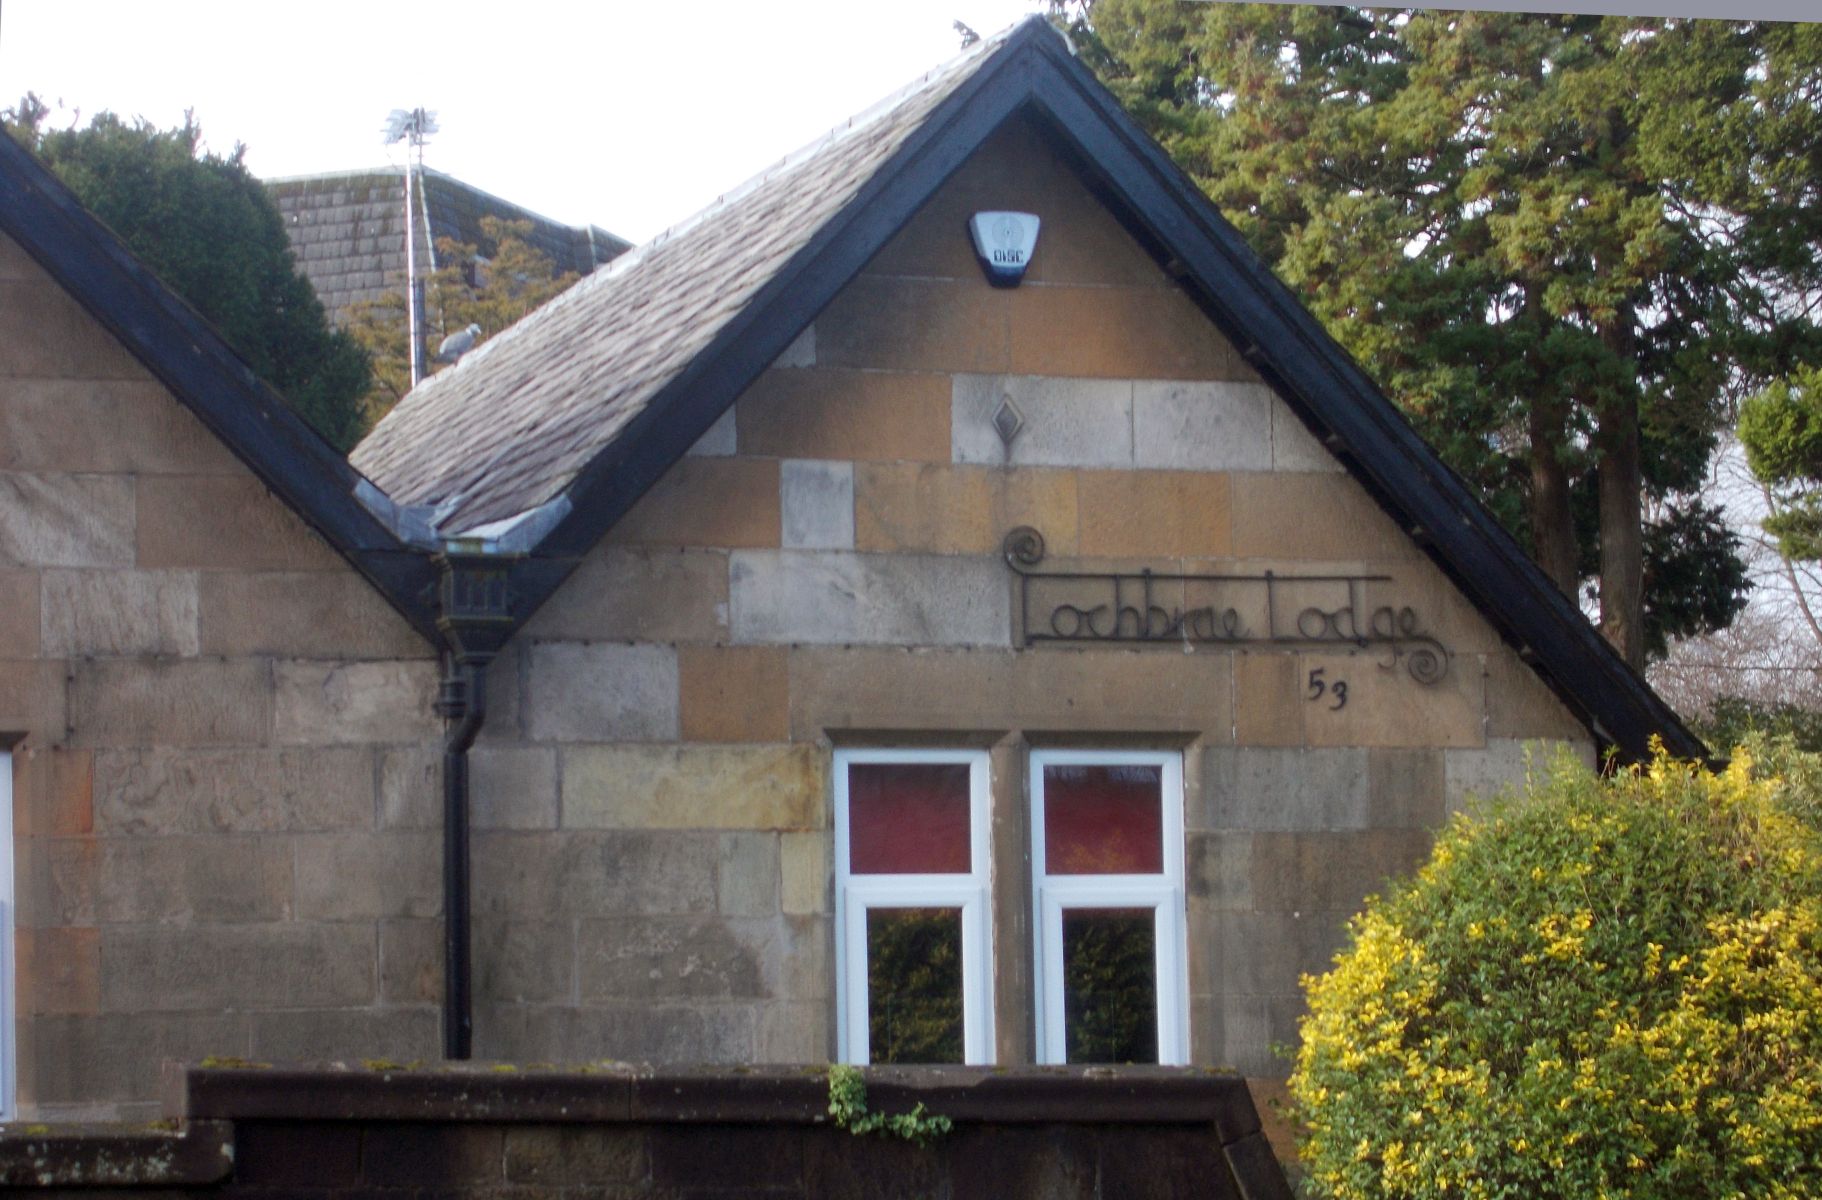 Lochbrae Lodge House at St. Germain's Loch in Bearsden